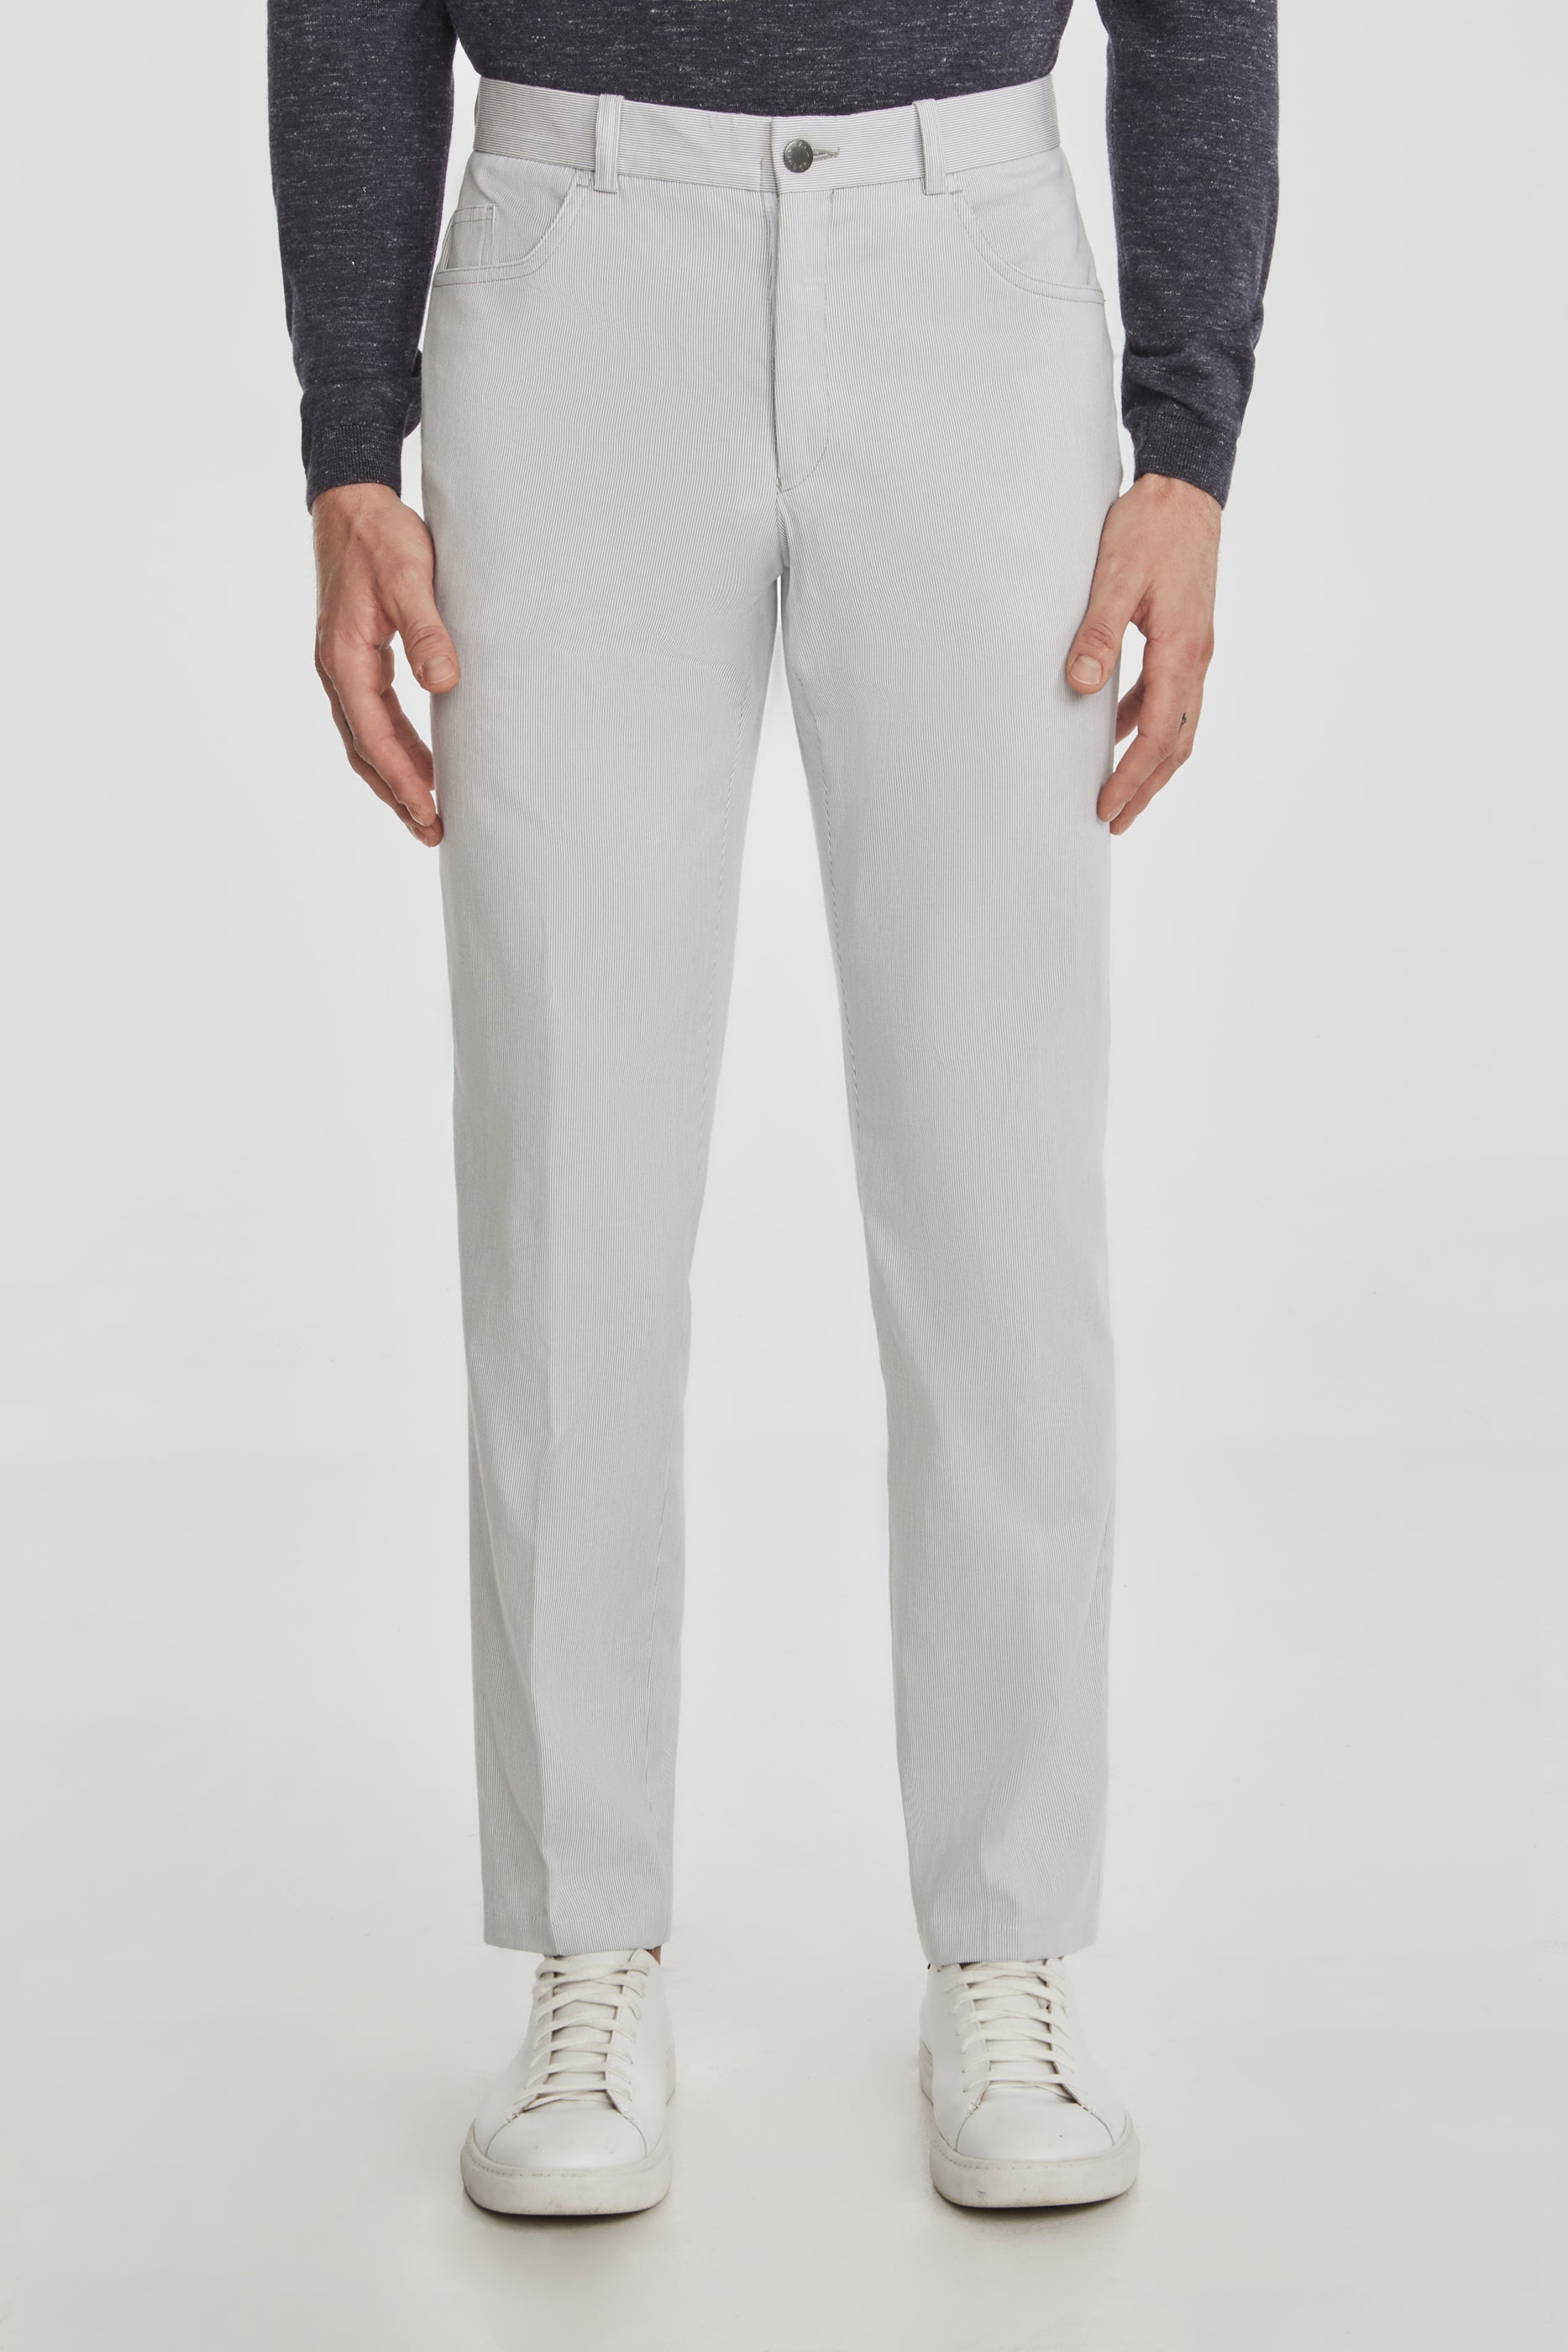 Vue alternative Pantalon en coton extensible Pinfeather Sage à 5 poches, gris clair